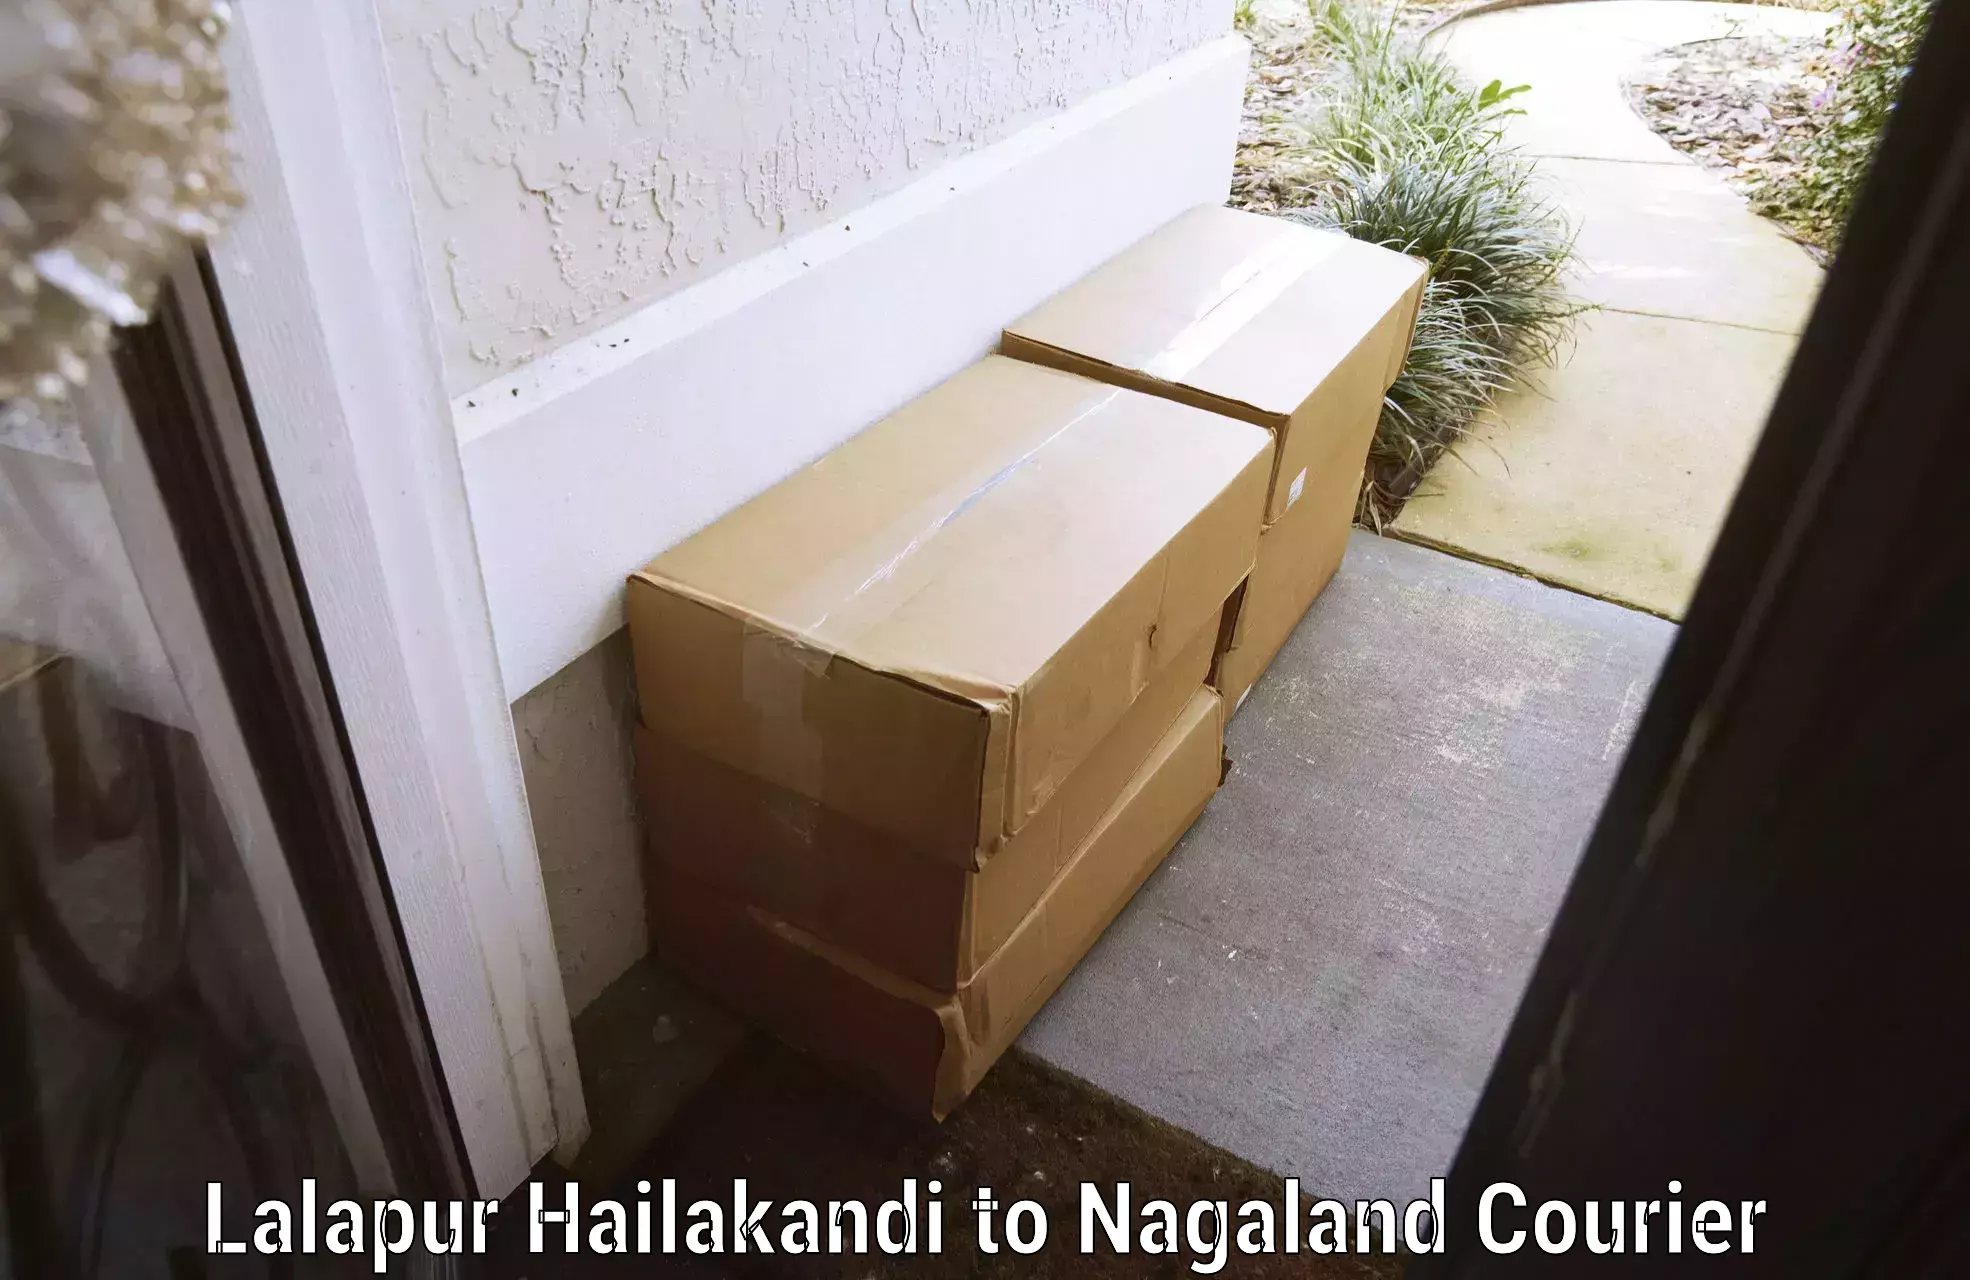 Baggage shipping schedule Lalapur Hailakandi to Nagaland